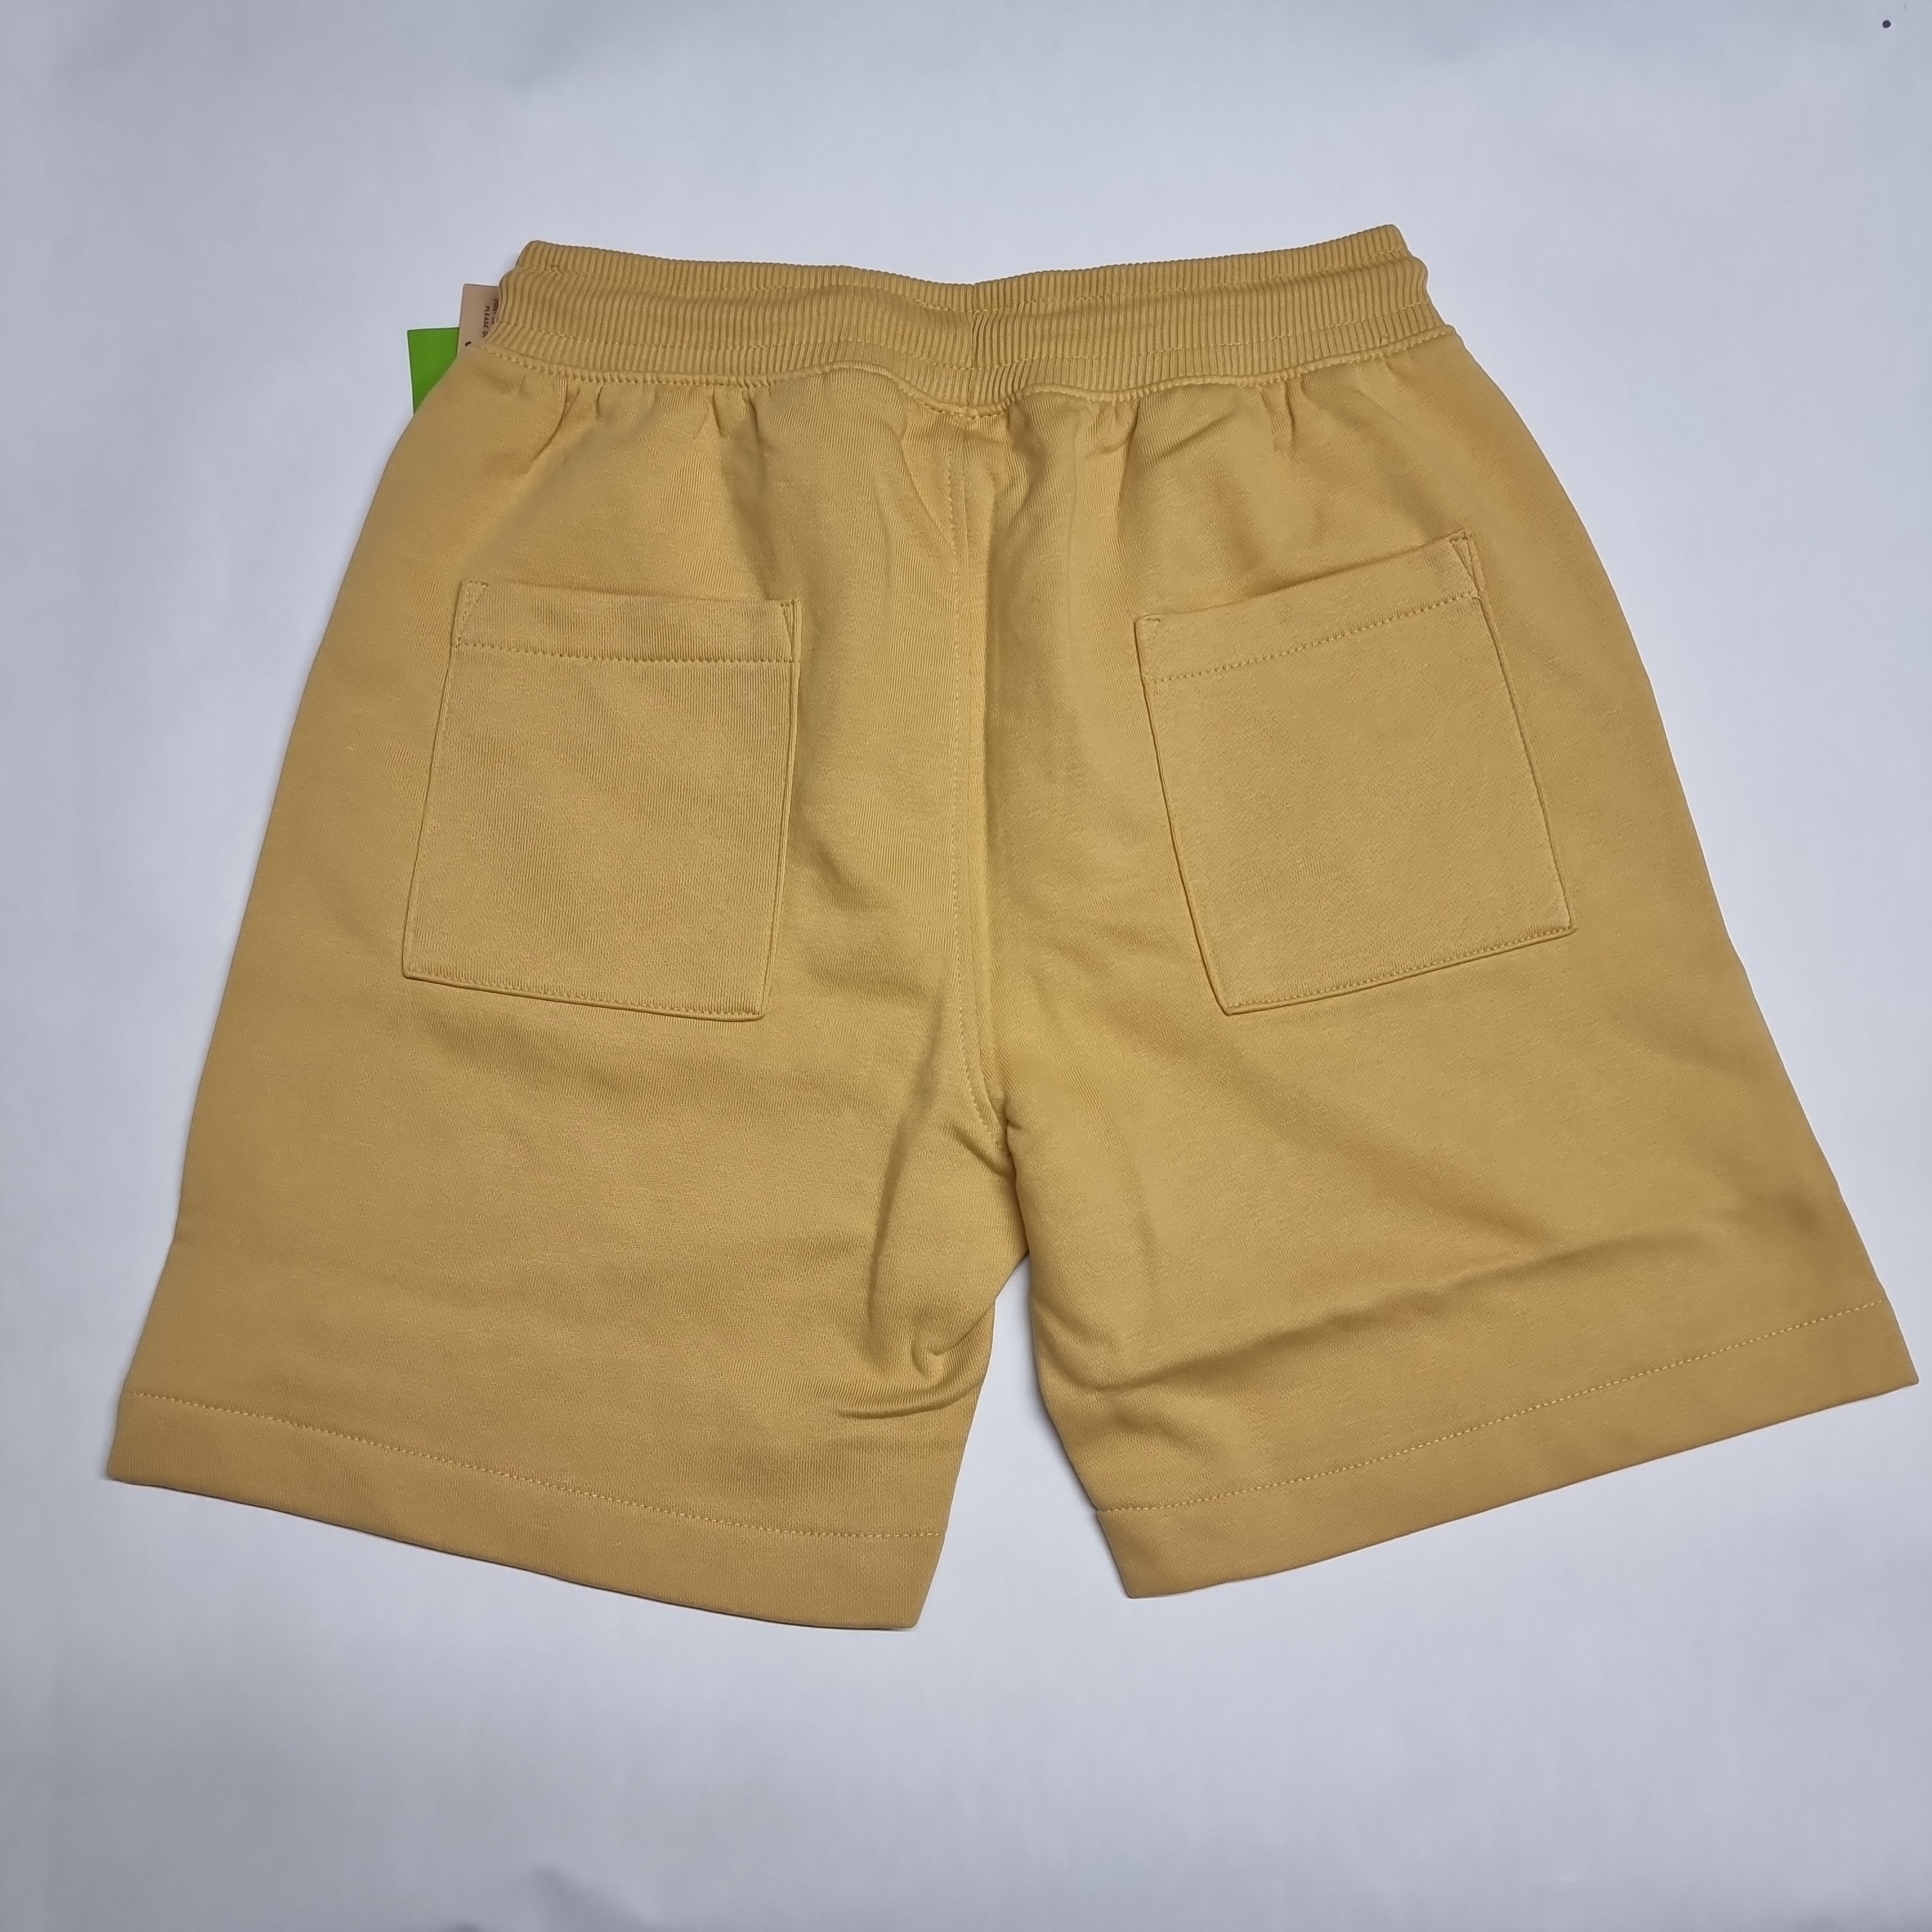 Yellow cotton quicksilver shorts